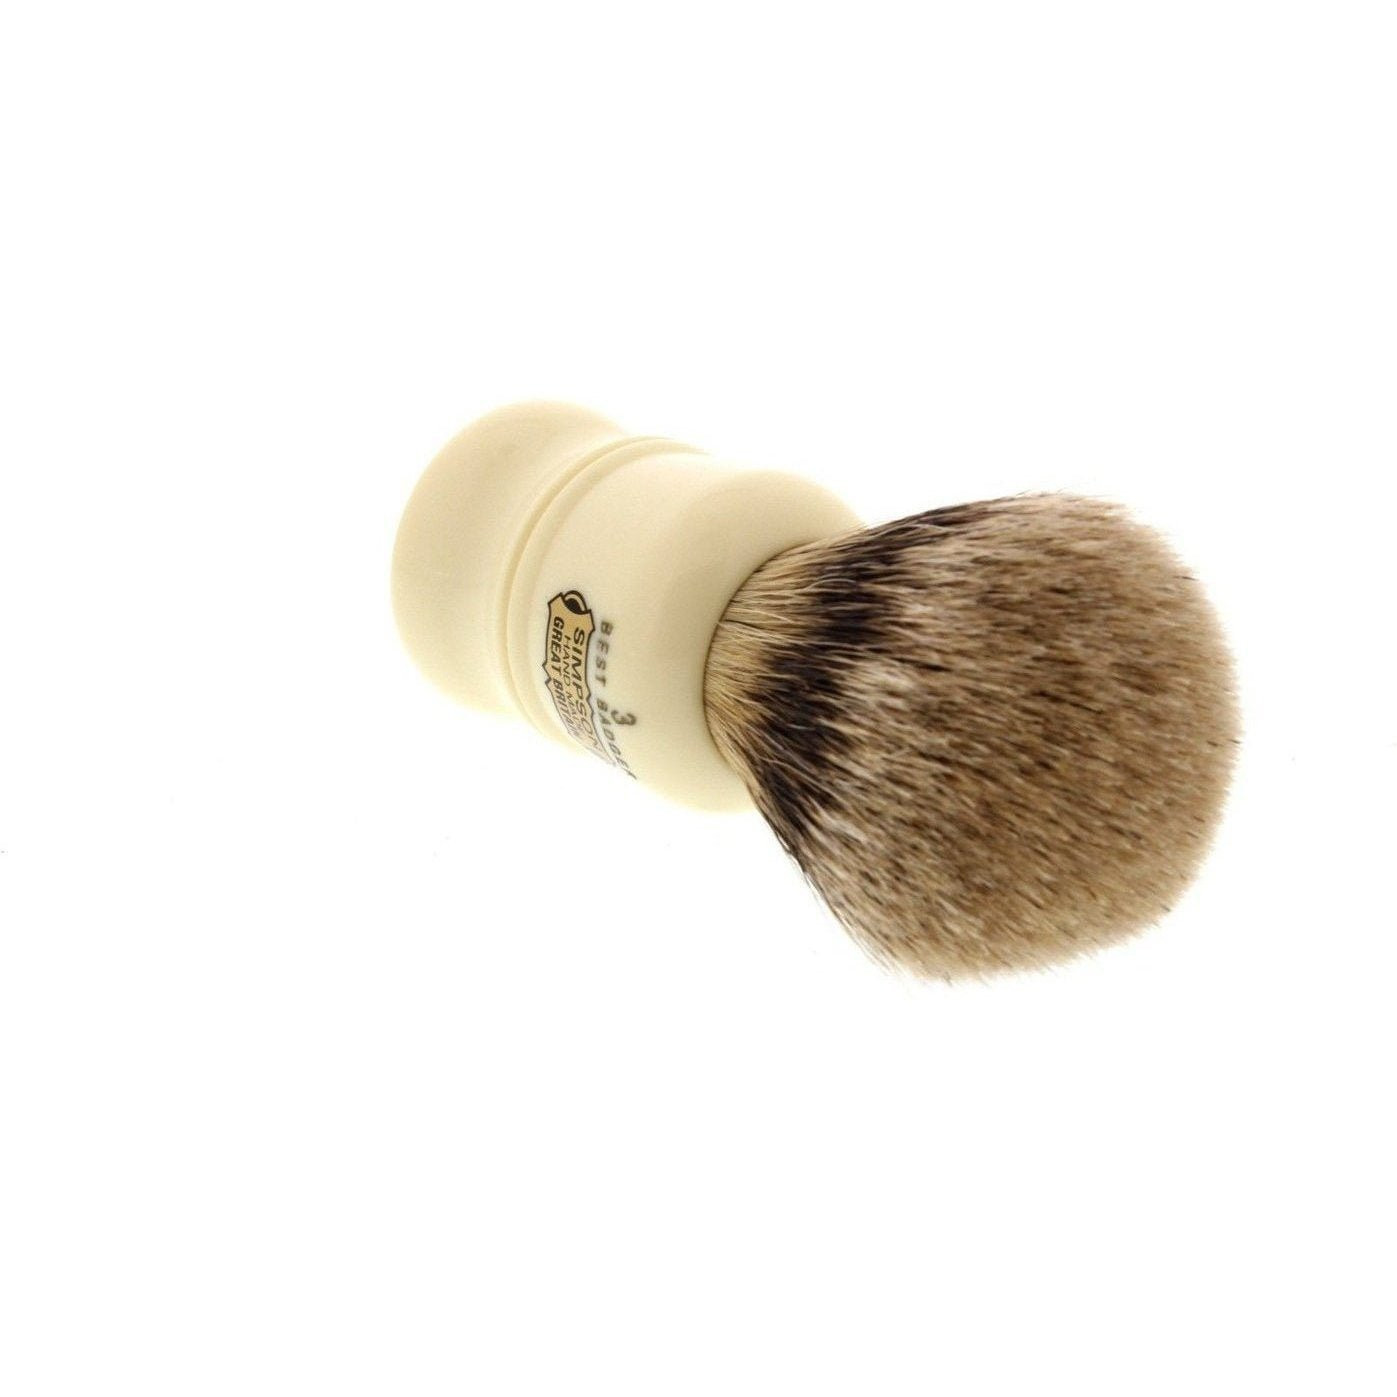 Product image 2 for Simpson Duke 3 Best Badger Shaving Brush D3